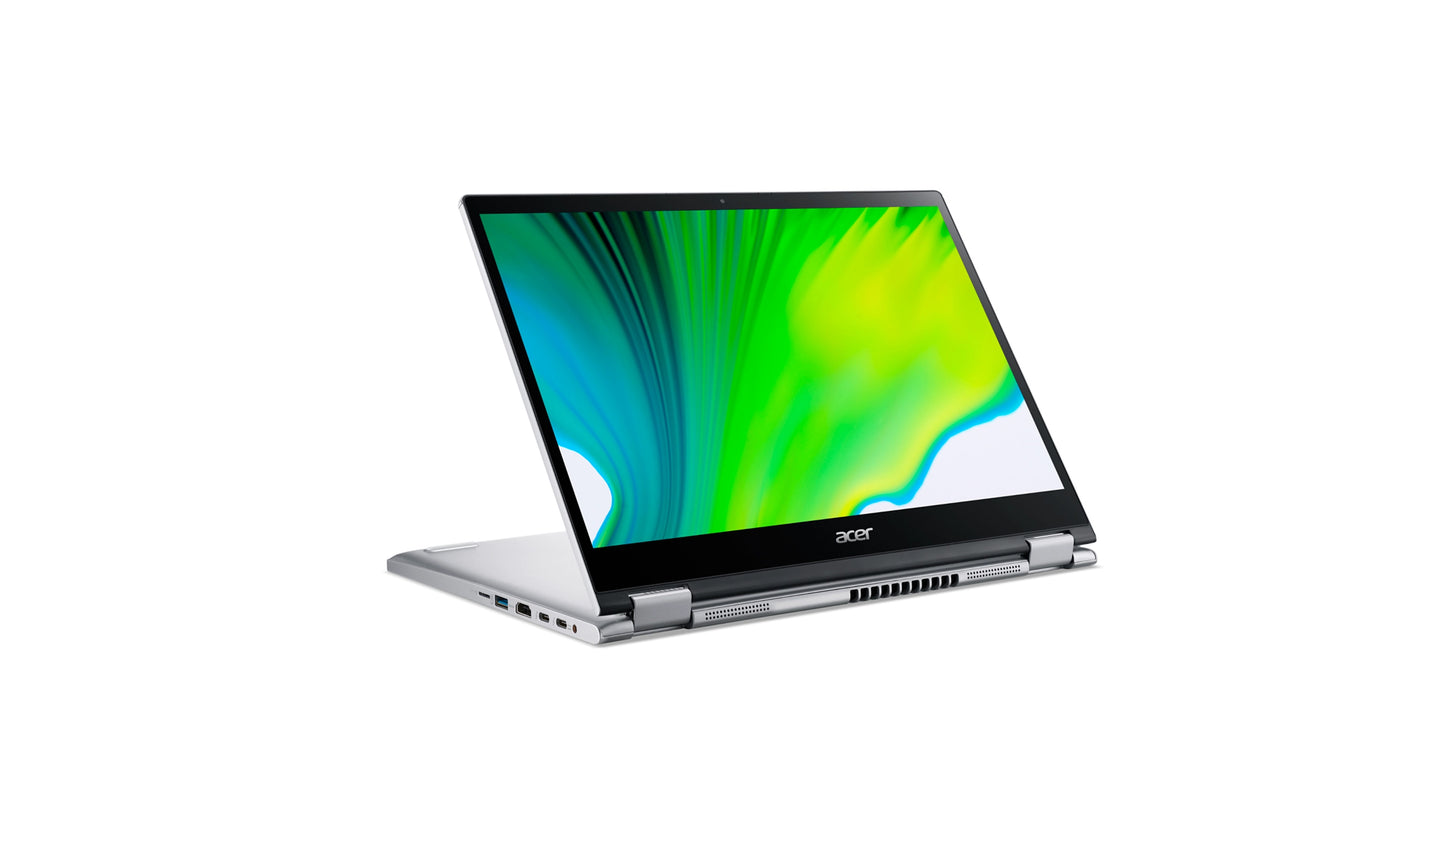 لاب توب Acer Spin، معالج Intel® Core™ i5-1135G7 رباعي النواة بسرعة 2.40 جيجا هرتز، وذاكرة وصول عشوائي سعتها 8 جيجا بايت، ومحرك أقراص SSD سعة 512 جيجا بايت. 